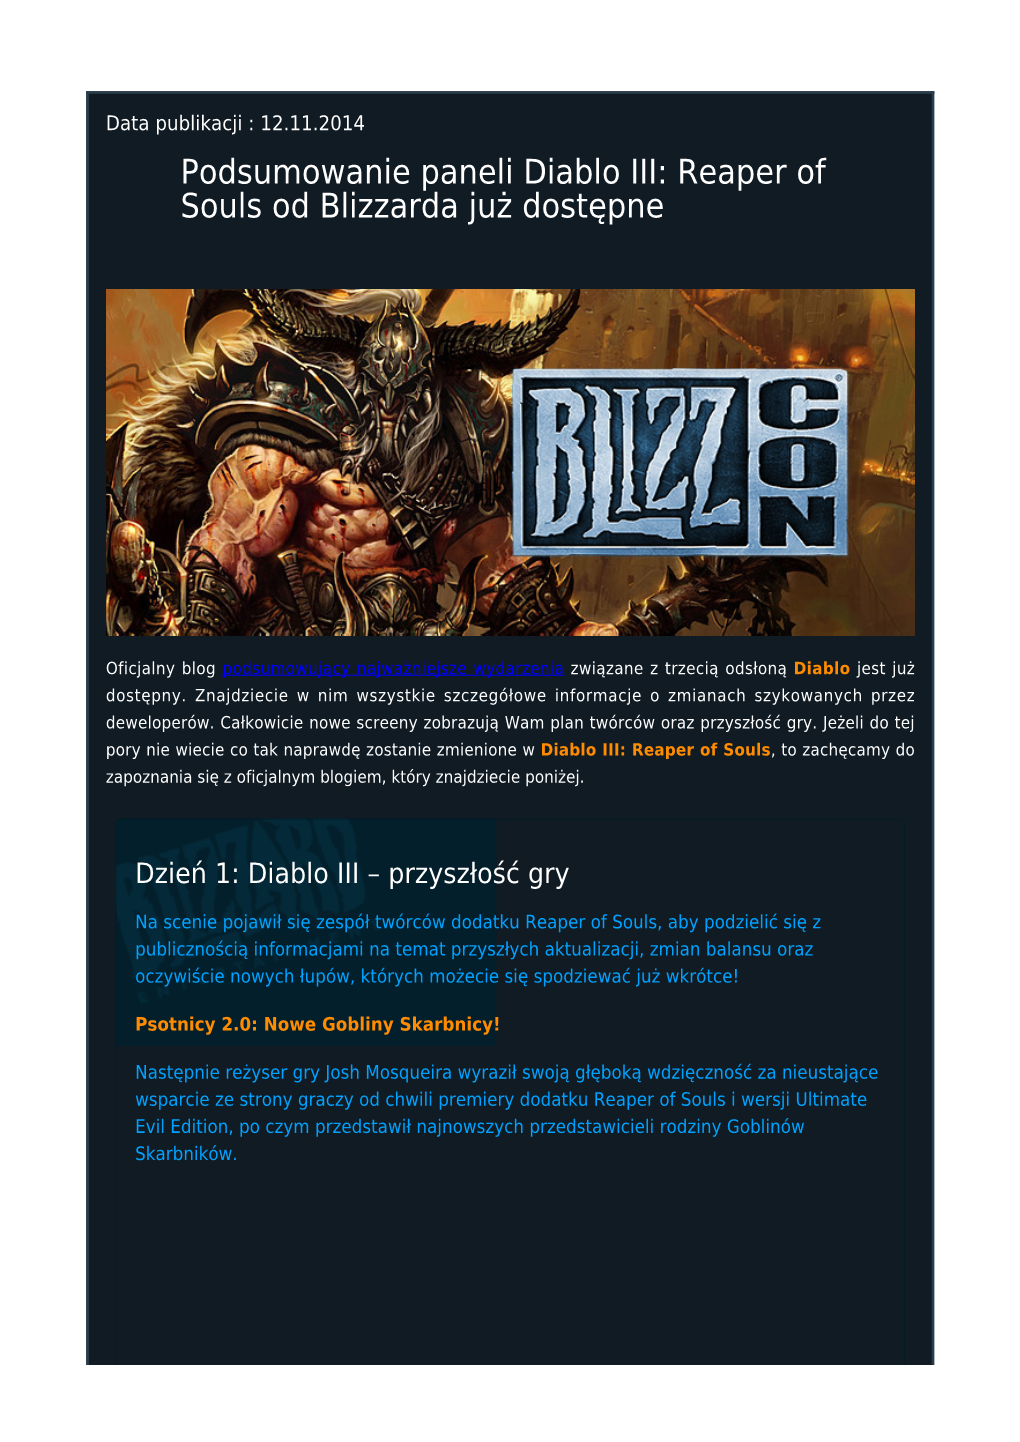 Podsumowanie Paneli Diablo III: Reaper of Souls Od Blizzarda Już Dostępne